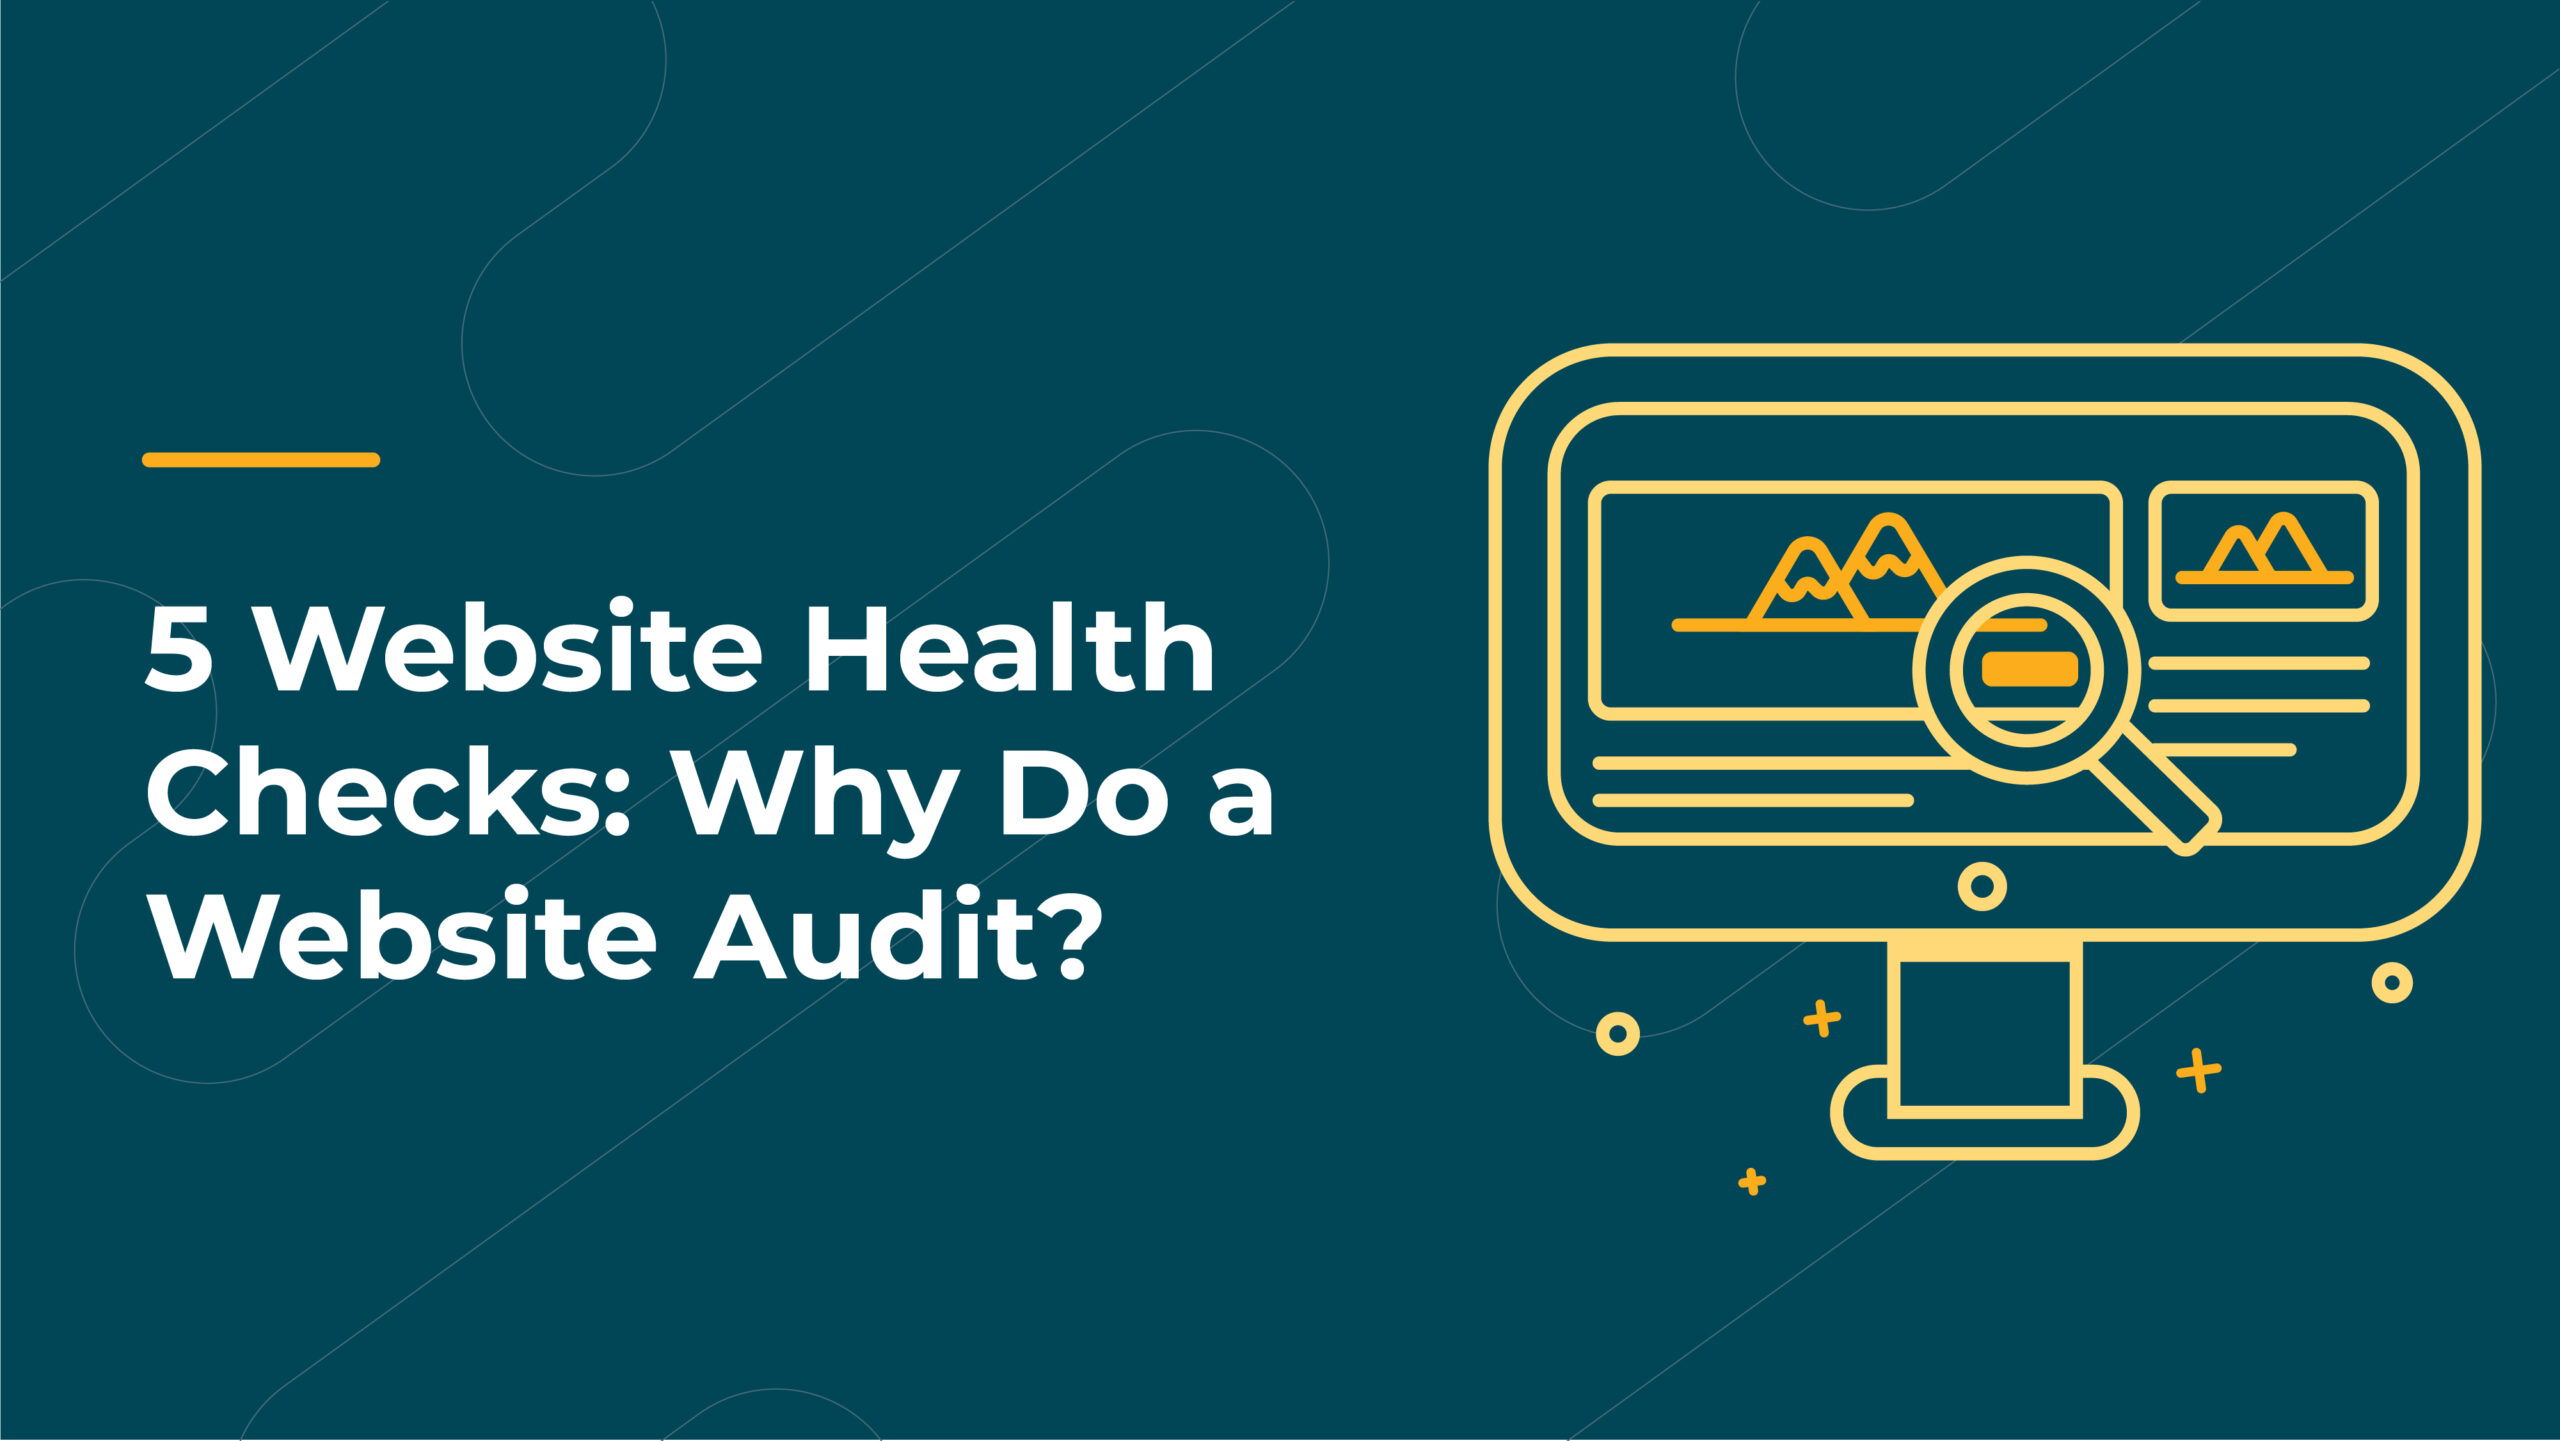 5 website health checks: why do a website audit?